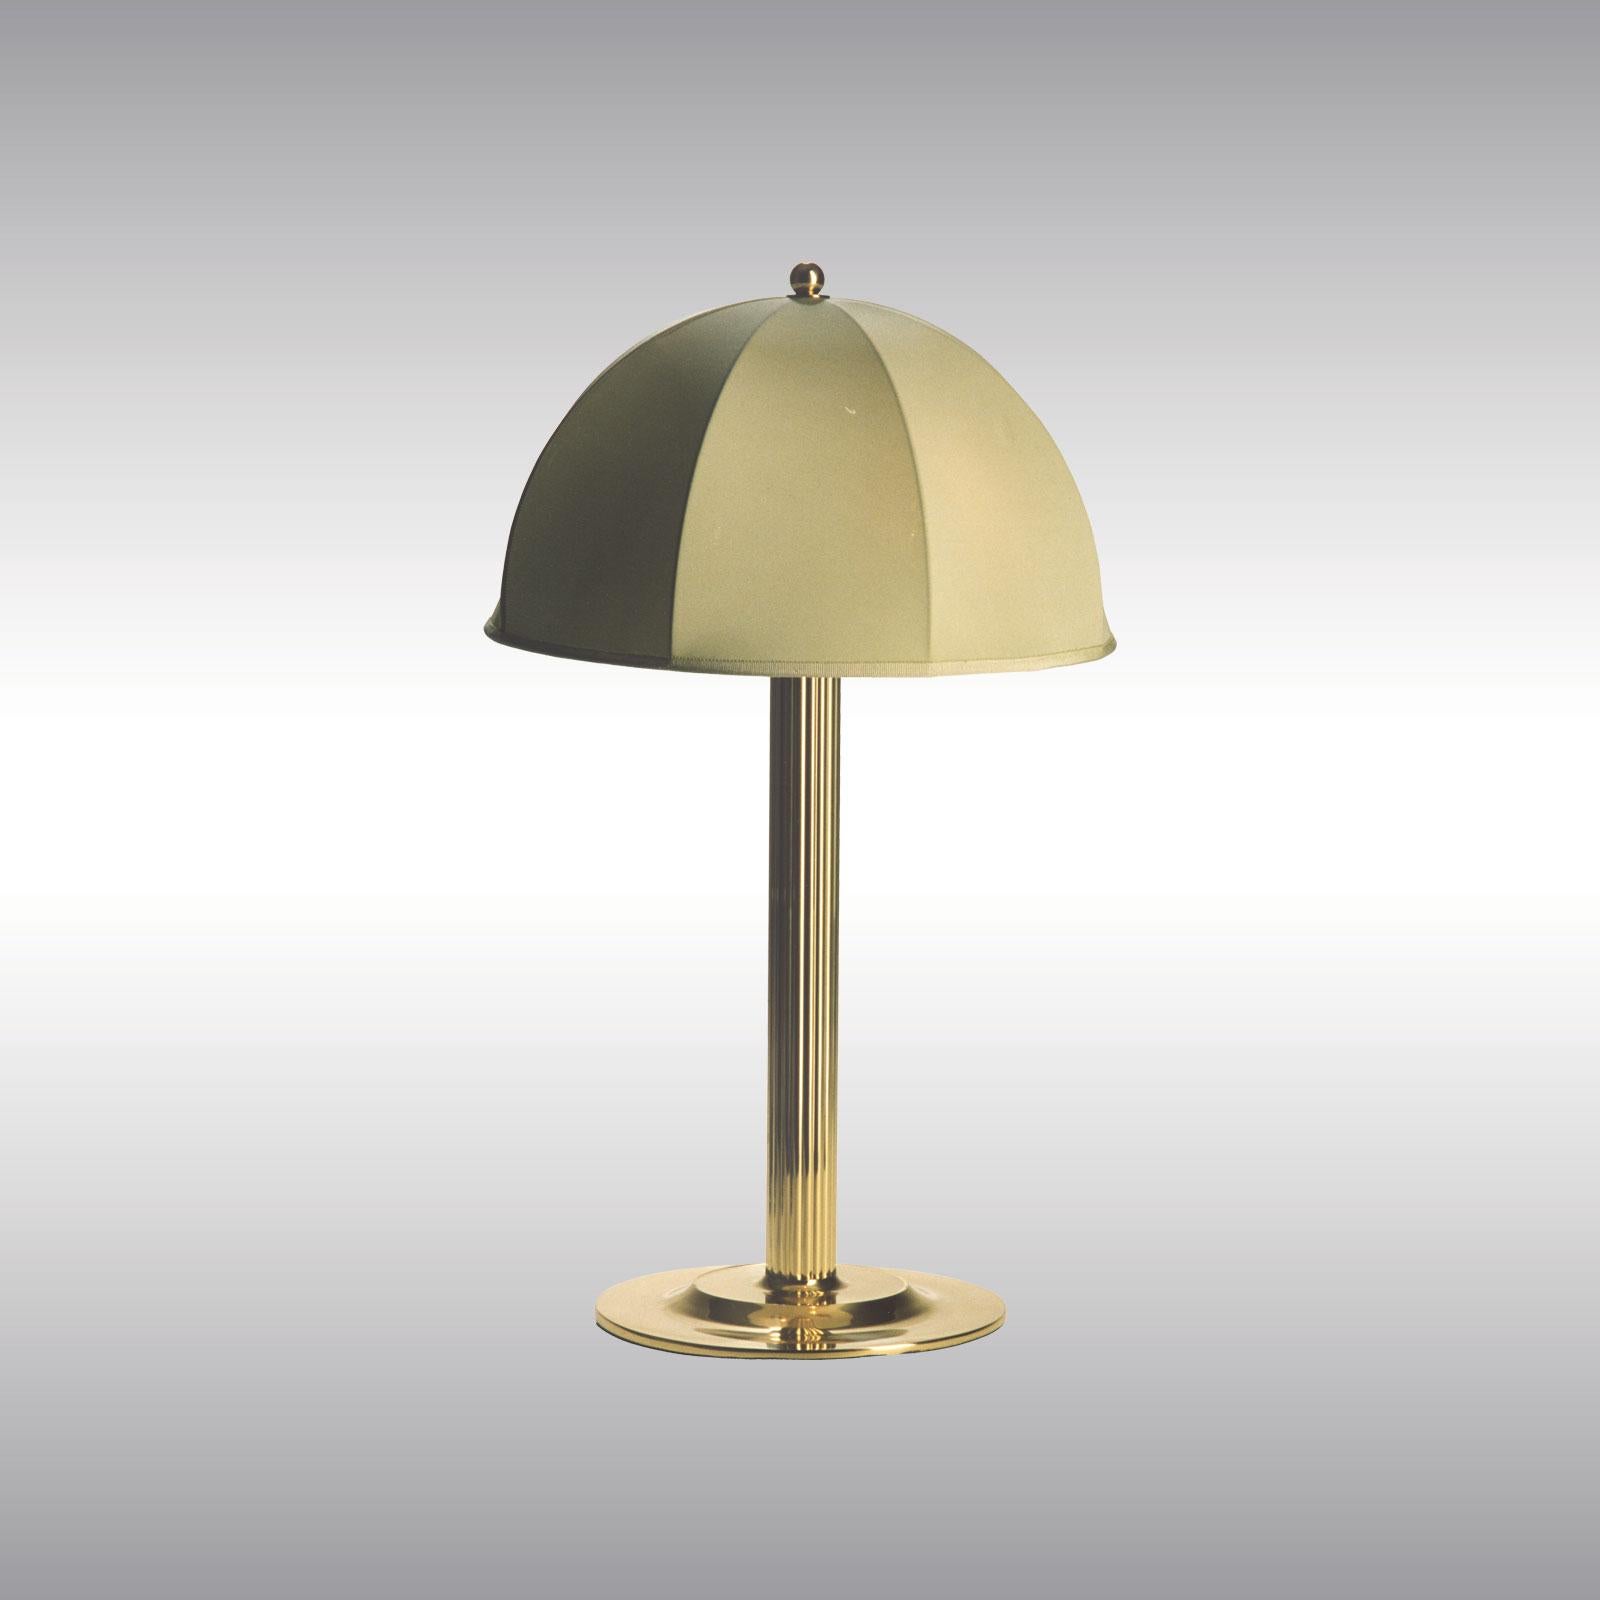 Ähnlich wie die Steiner-Lampe von Adolf Loos, aber mit einem Seidenschirm. Veröffentlicht in Deutsche Kunst und Dekoration im Jahr 1915 für das Schlafzimmer der Familie Primavesi.

Die meisten Komponenten entsprechen den UL-Vorschriften, gegen